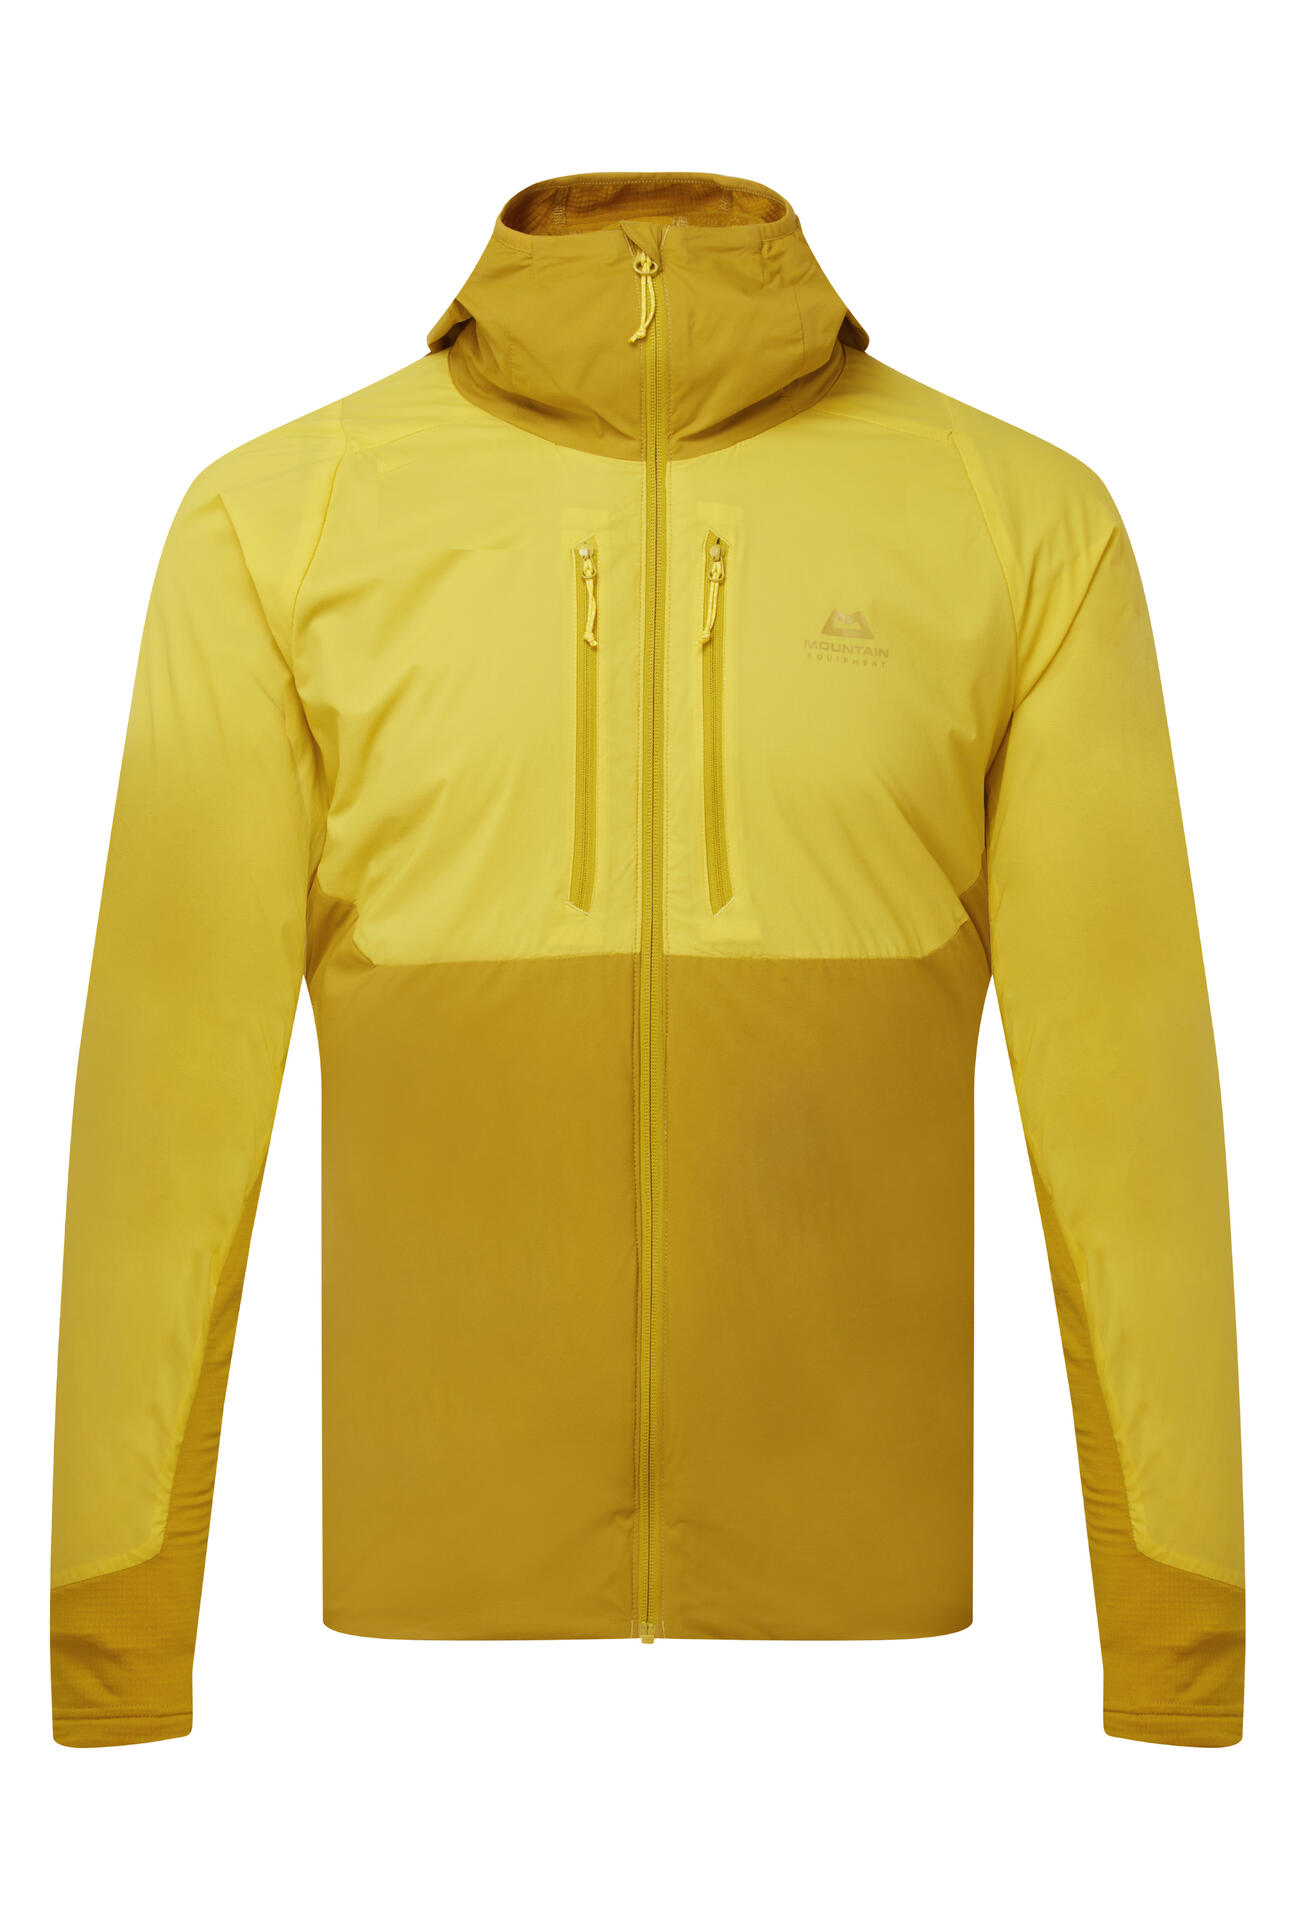 Mountain Equipment Switch Pro Hooded Jacket Men'S Barva: Lemon/Acid, Velikost: M